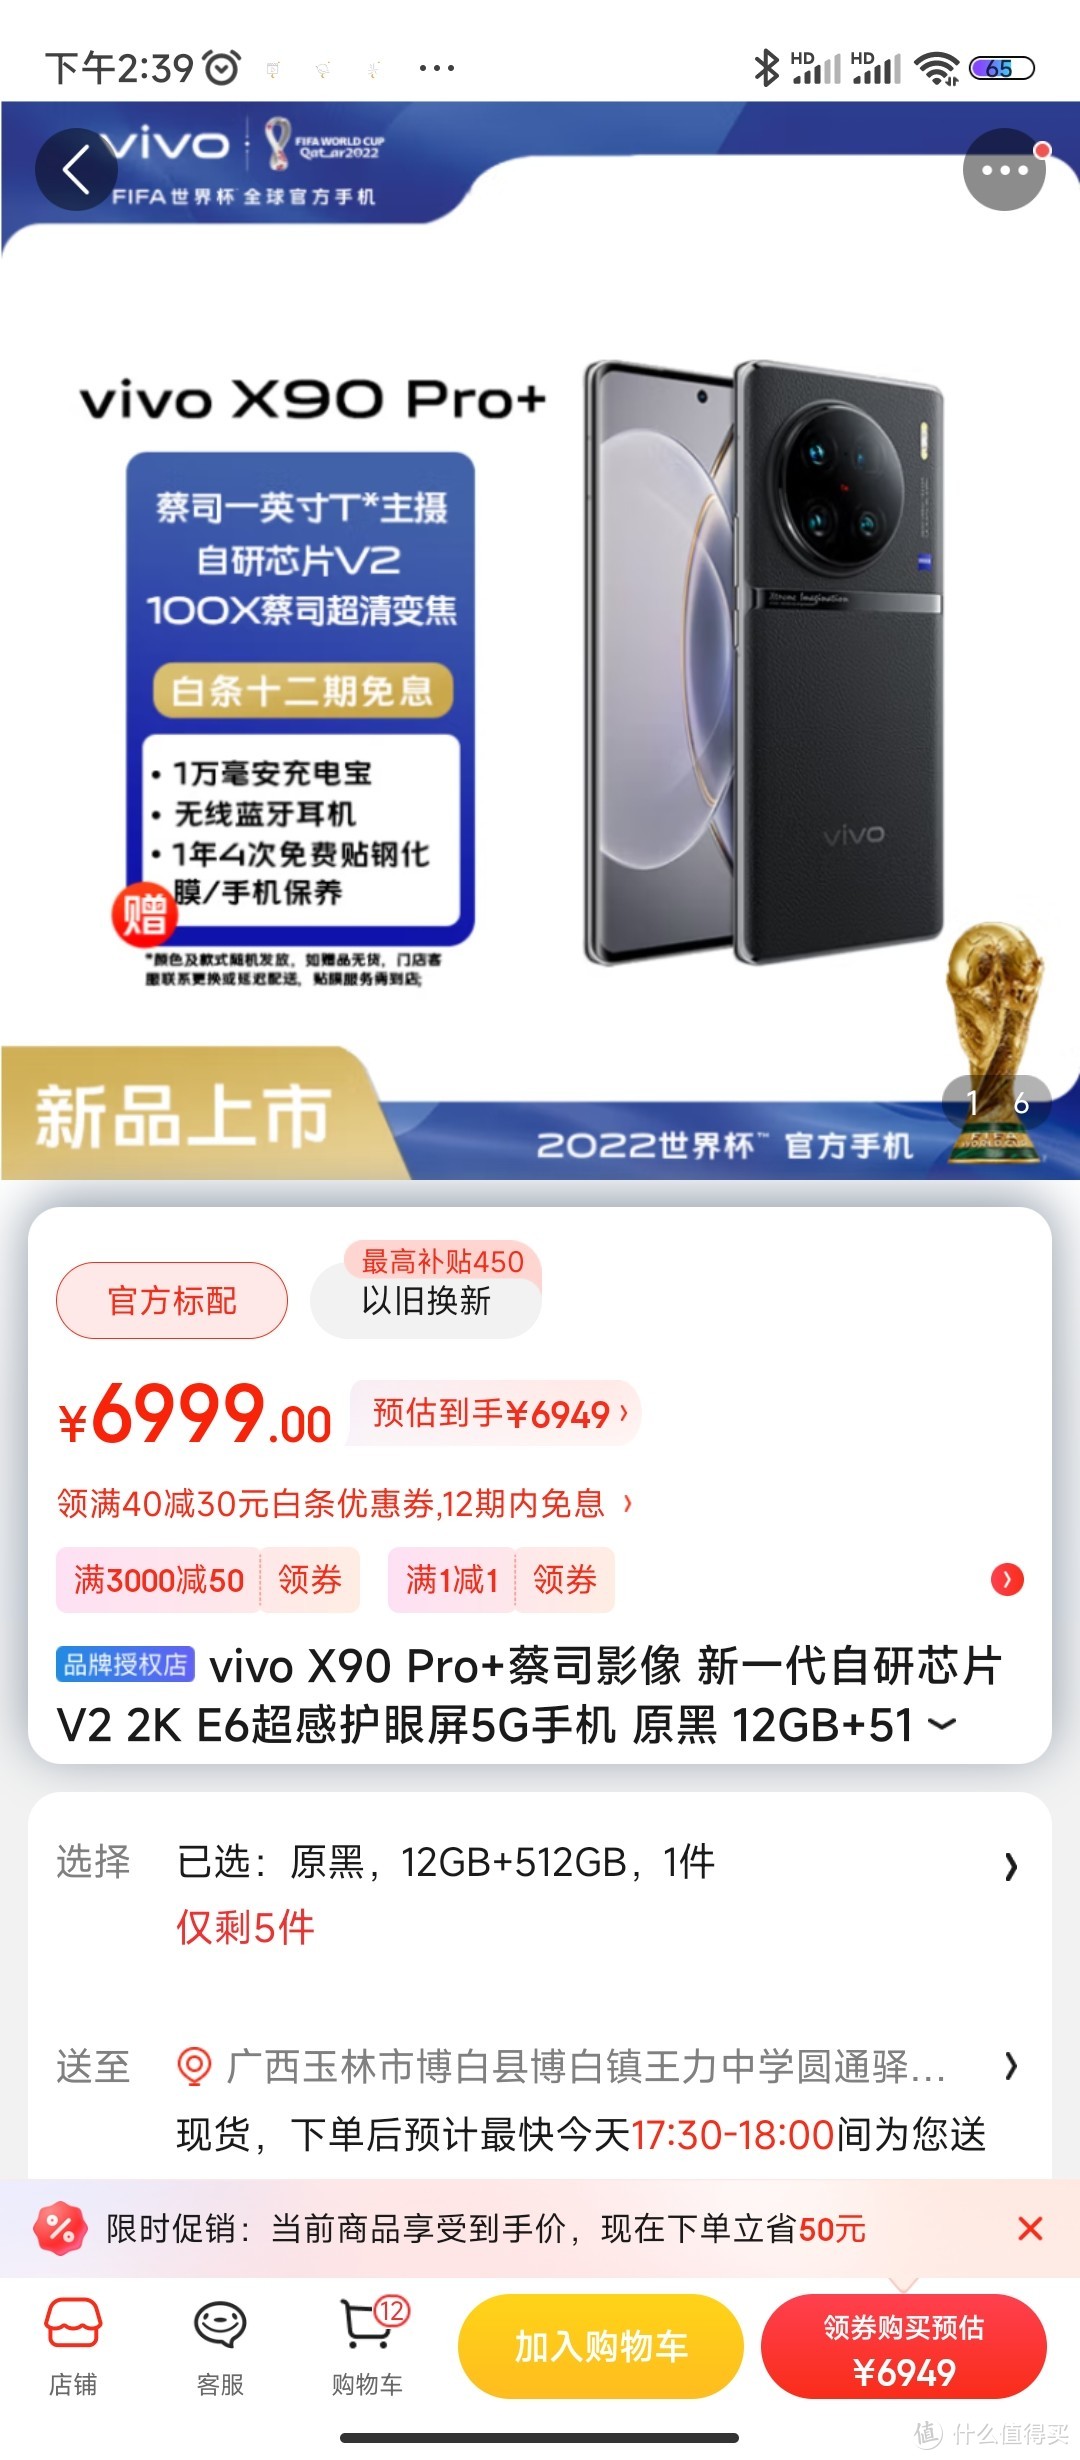 vivo X90 Pro+蔡司影像 新一代自研芯片V2 2K E6超感护眼屏5G手机 原黑 12GB+512GB